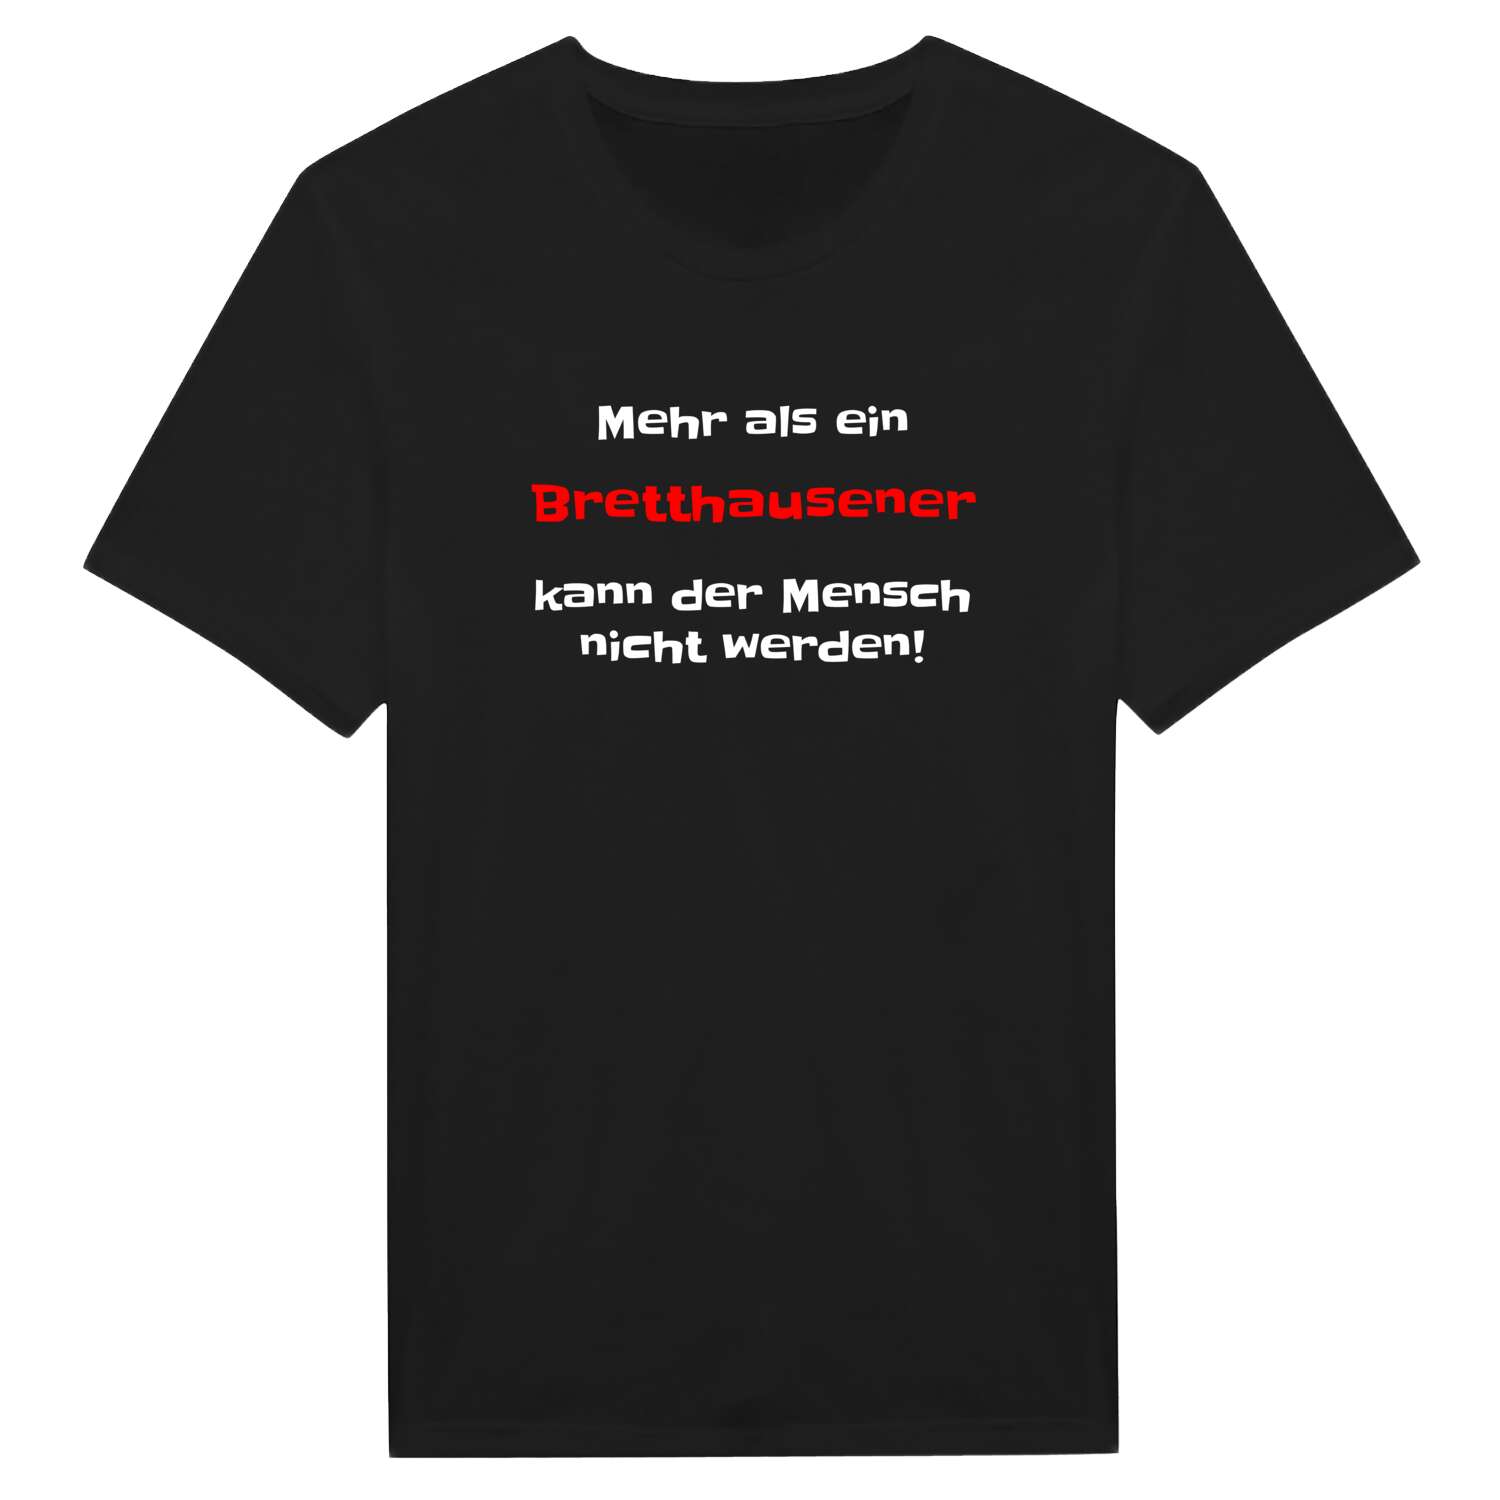 Bretthausen T-Shirt »Mehr als ein«